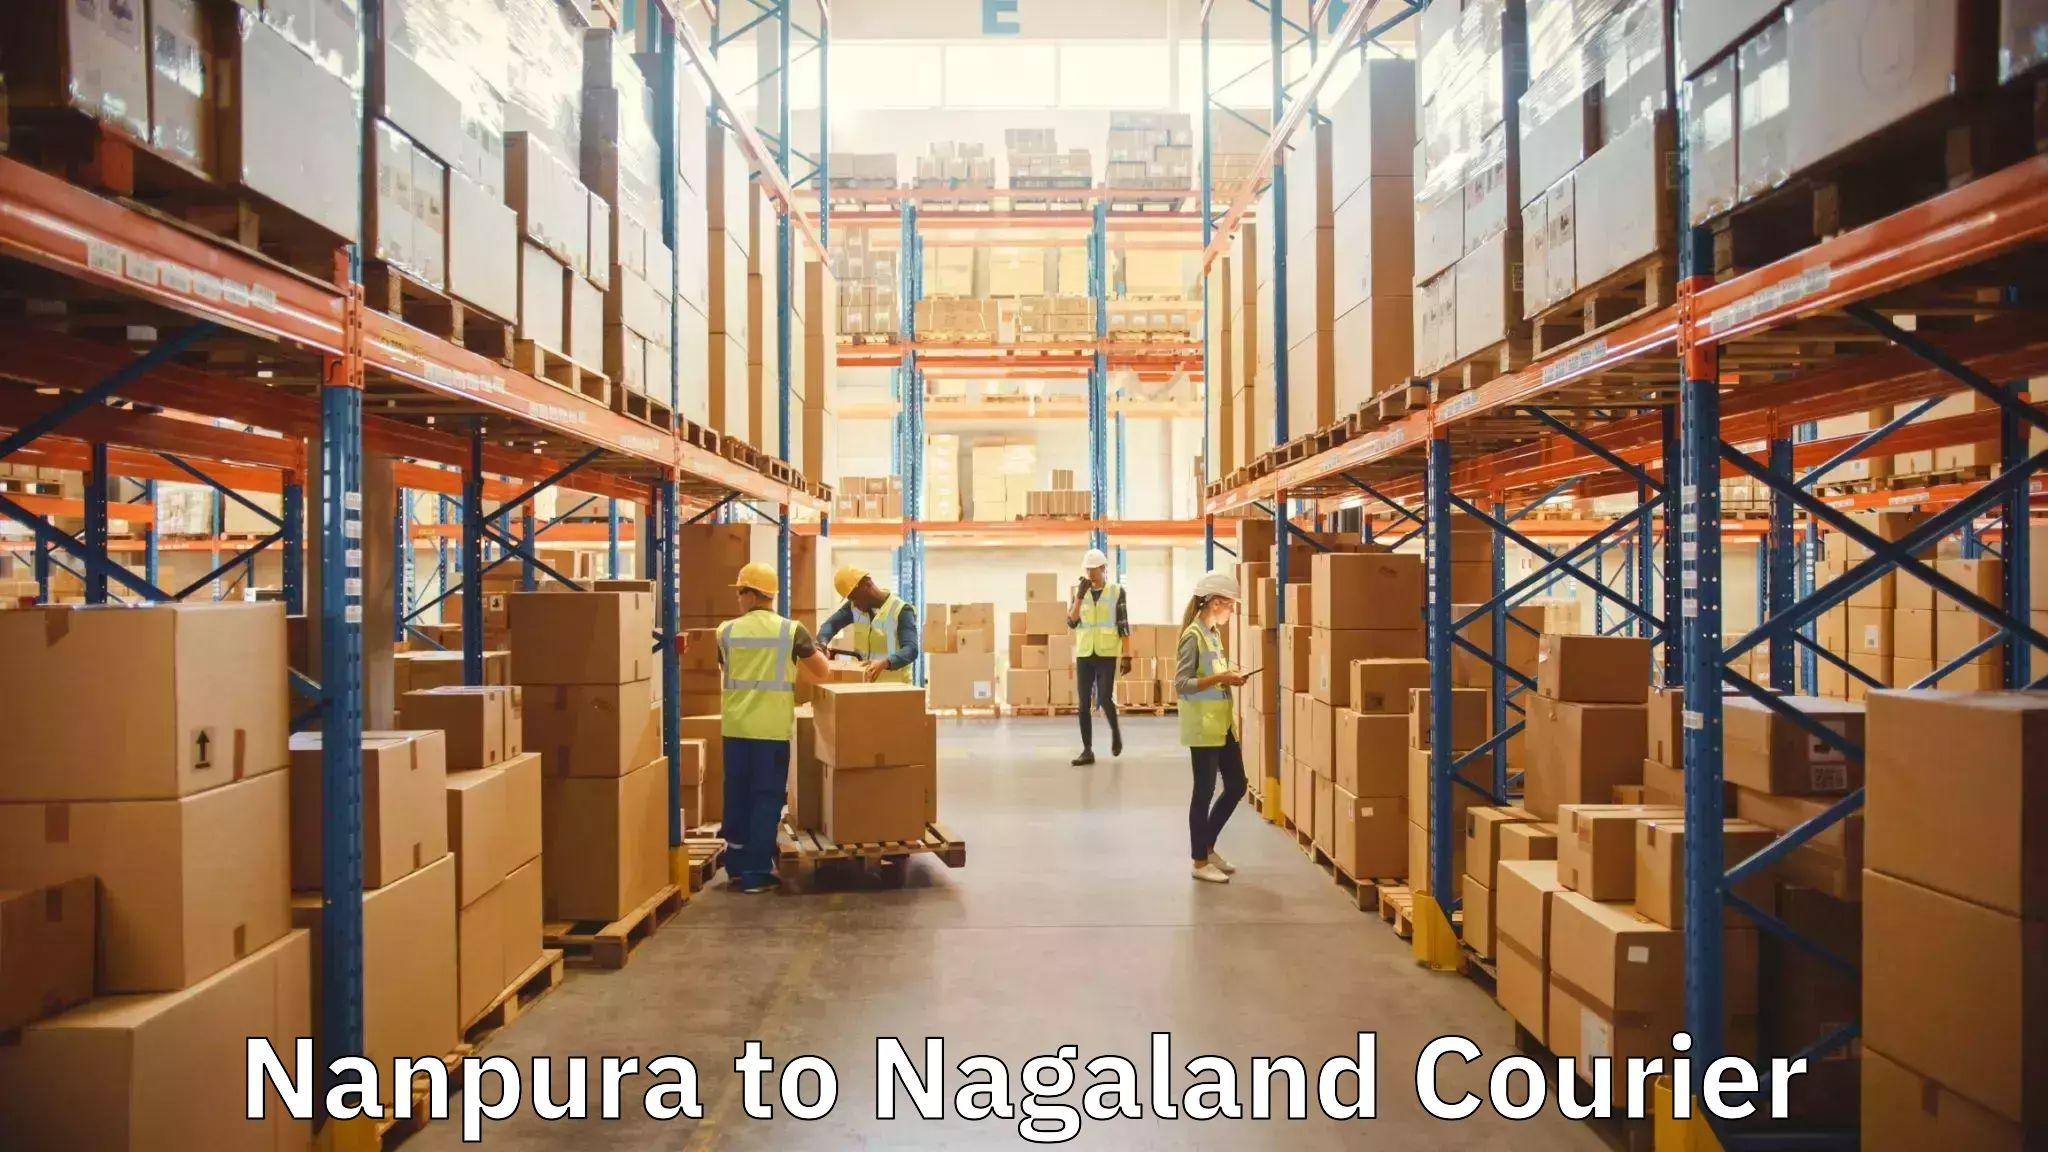 Moving and packing experts Nanpura to Wokha